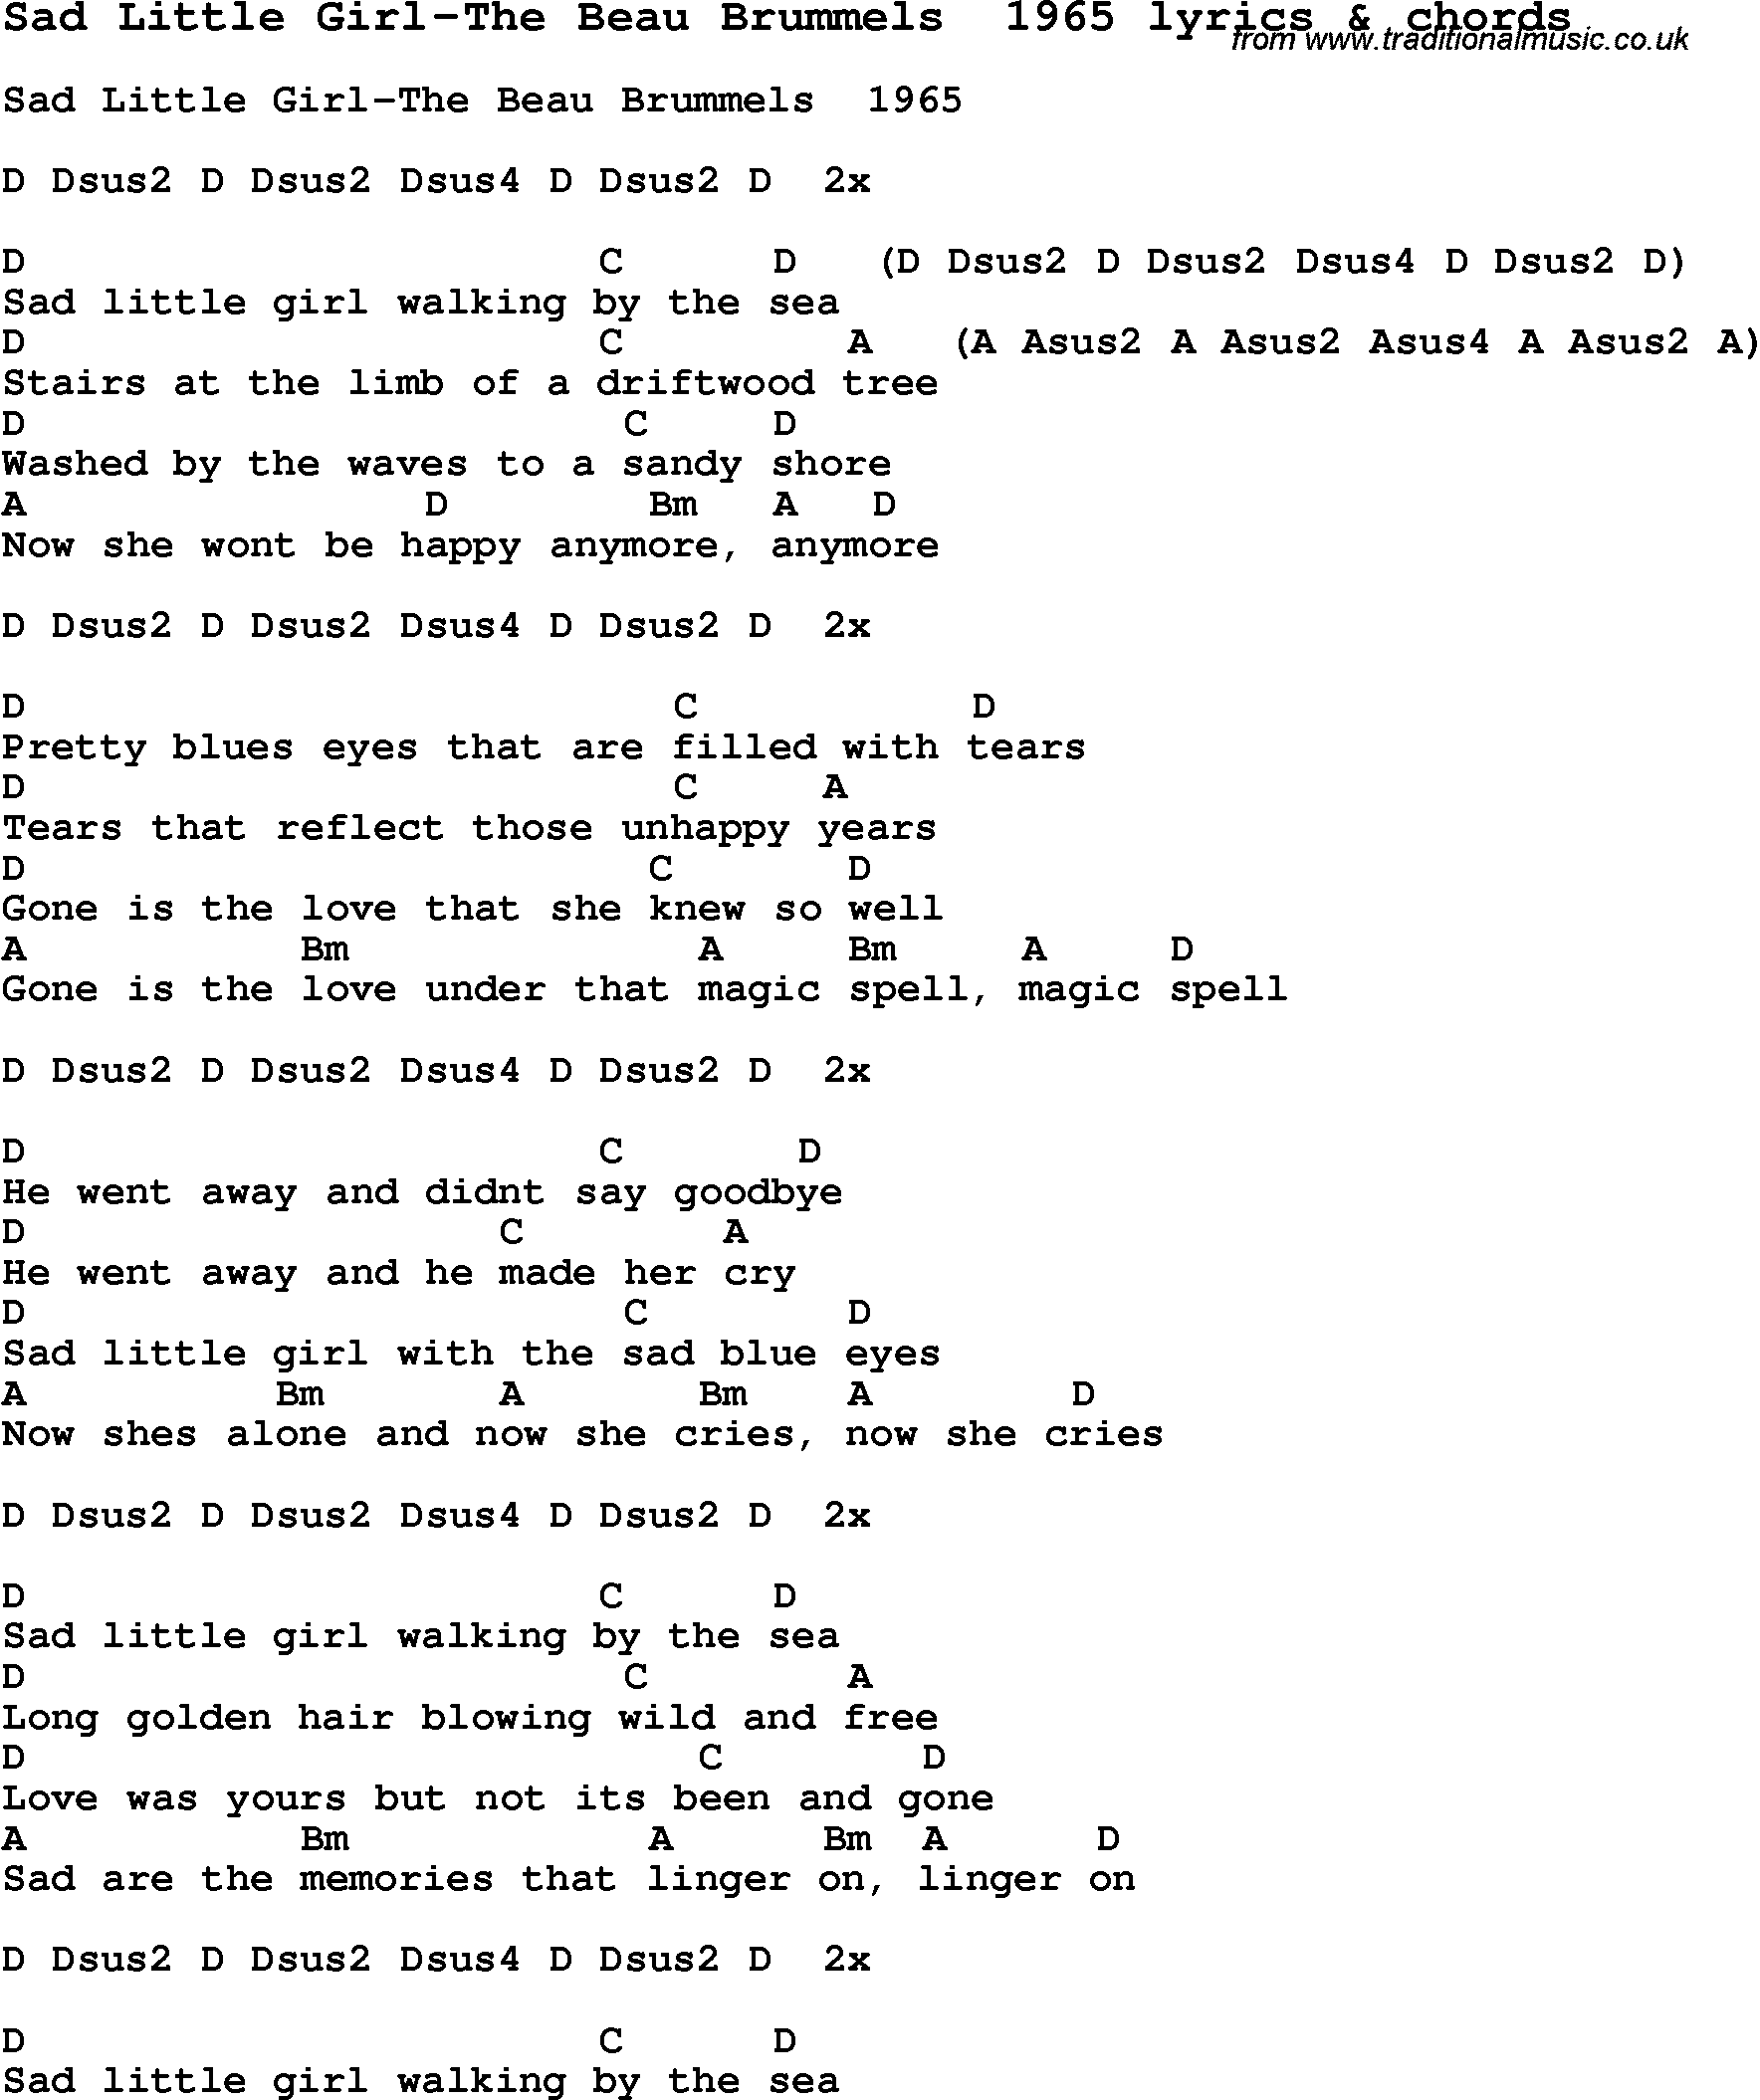 Love Song Lyrics for: Sad Little Girl-The Beau Brummels  1965 with chords for Ukulele, Guitar Banjo etc.